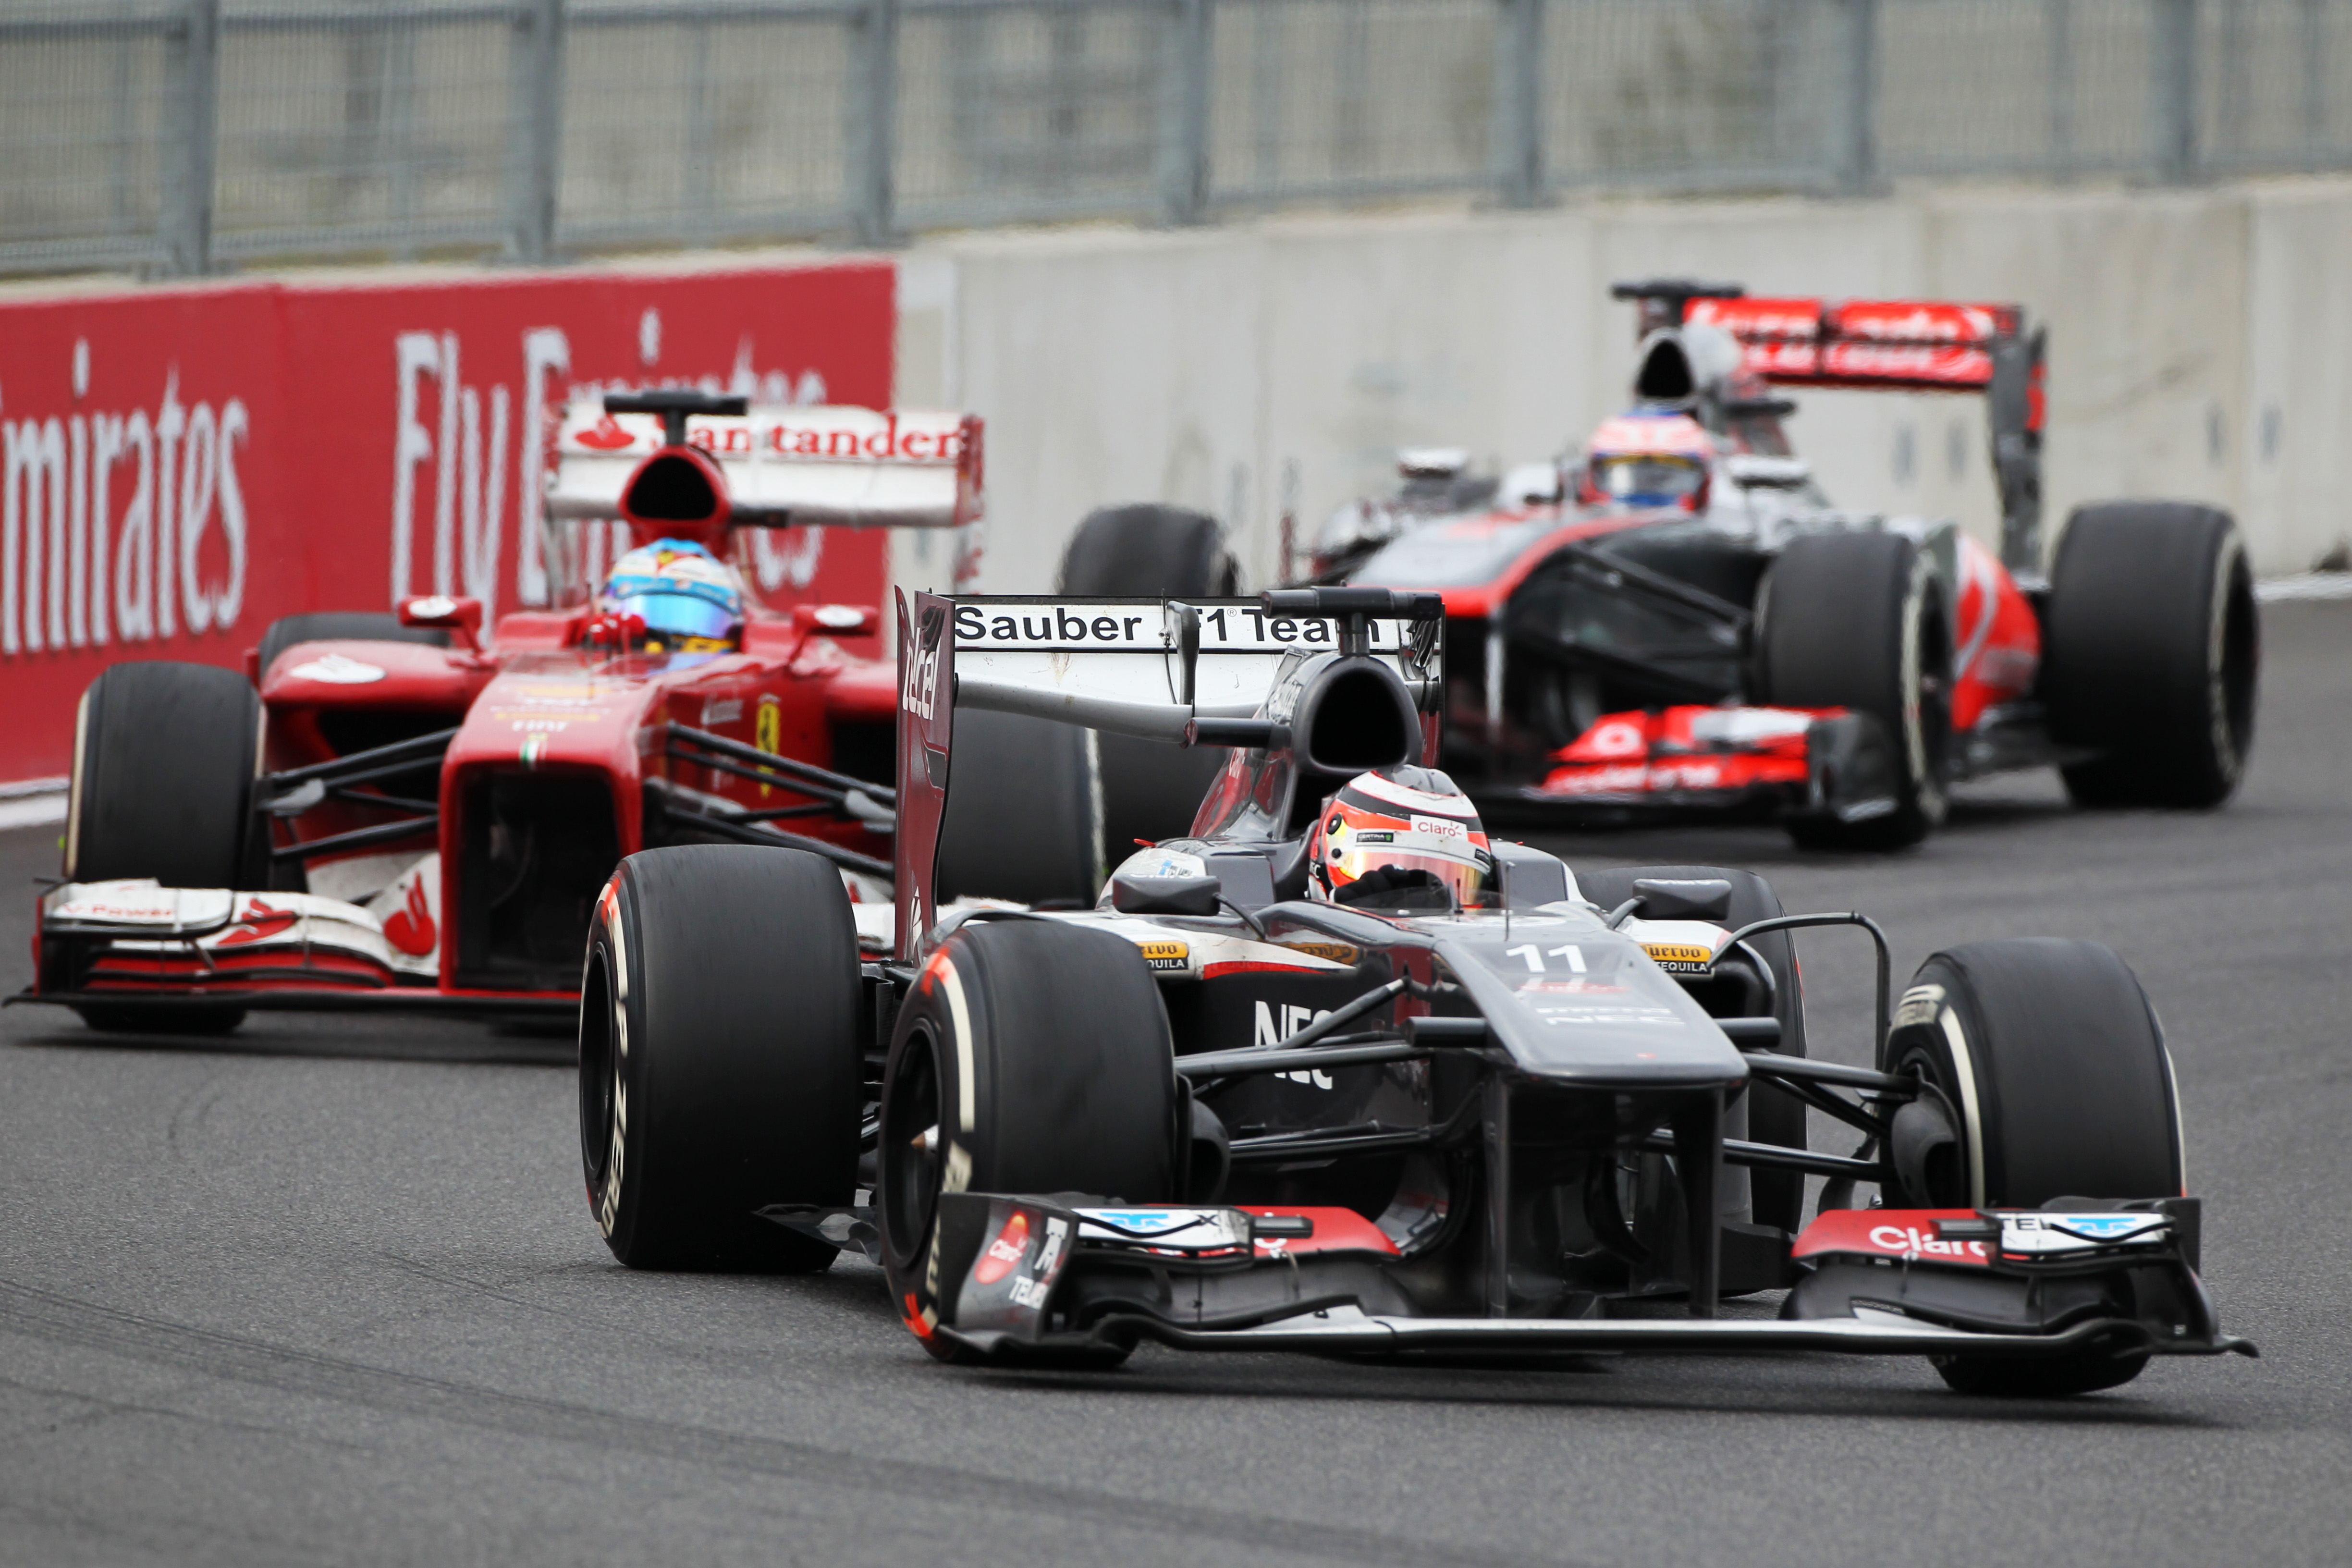 Nico Hulkenberg, 2013 Korean Grand Prix, Sauber, F1